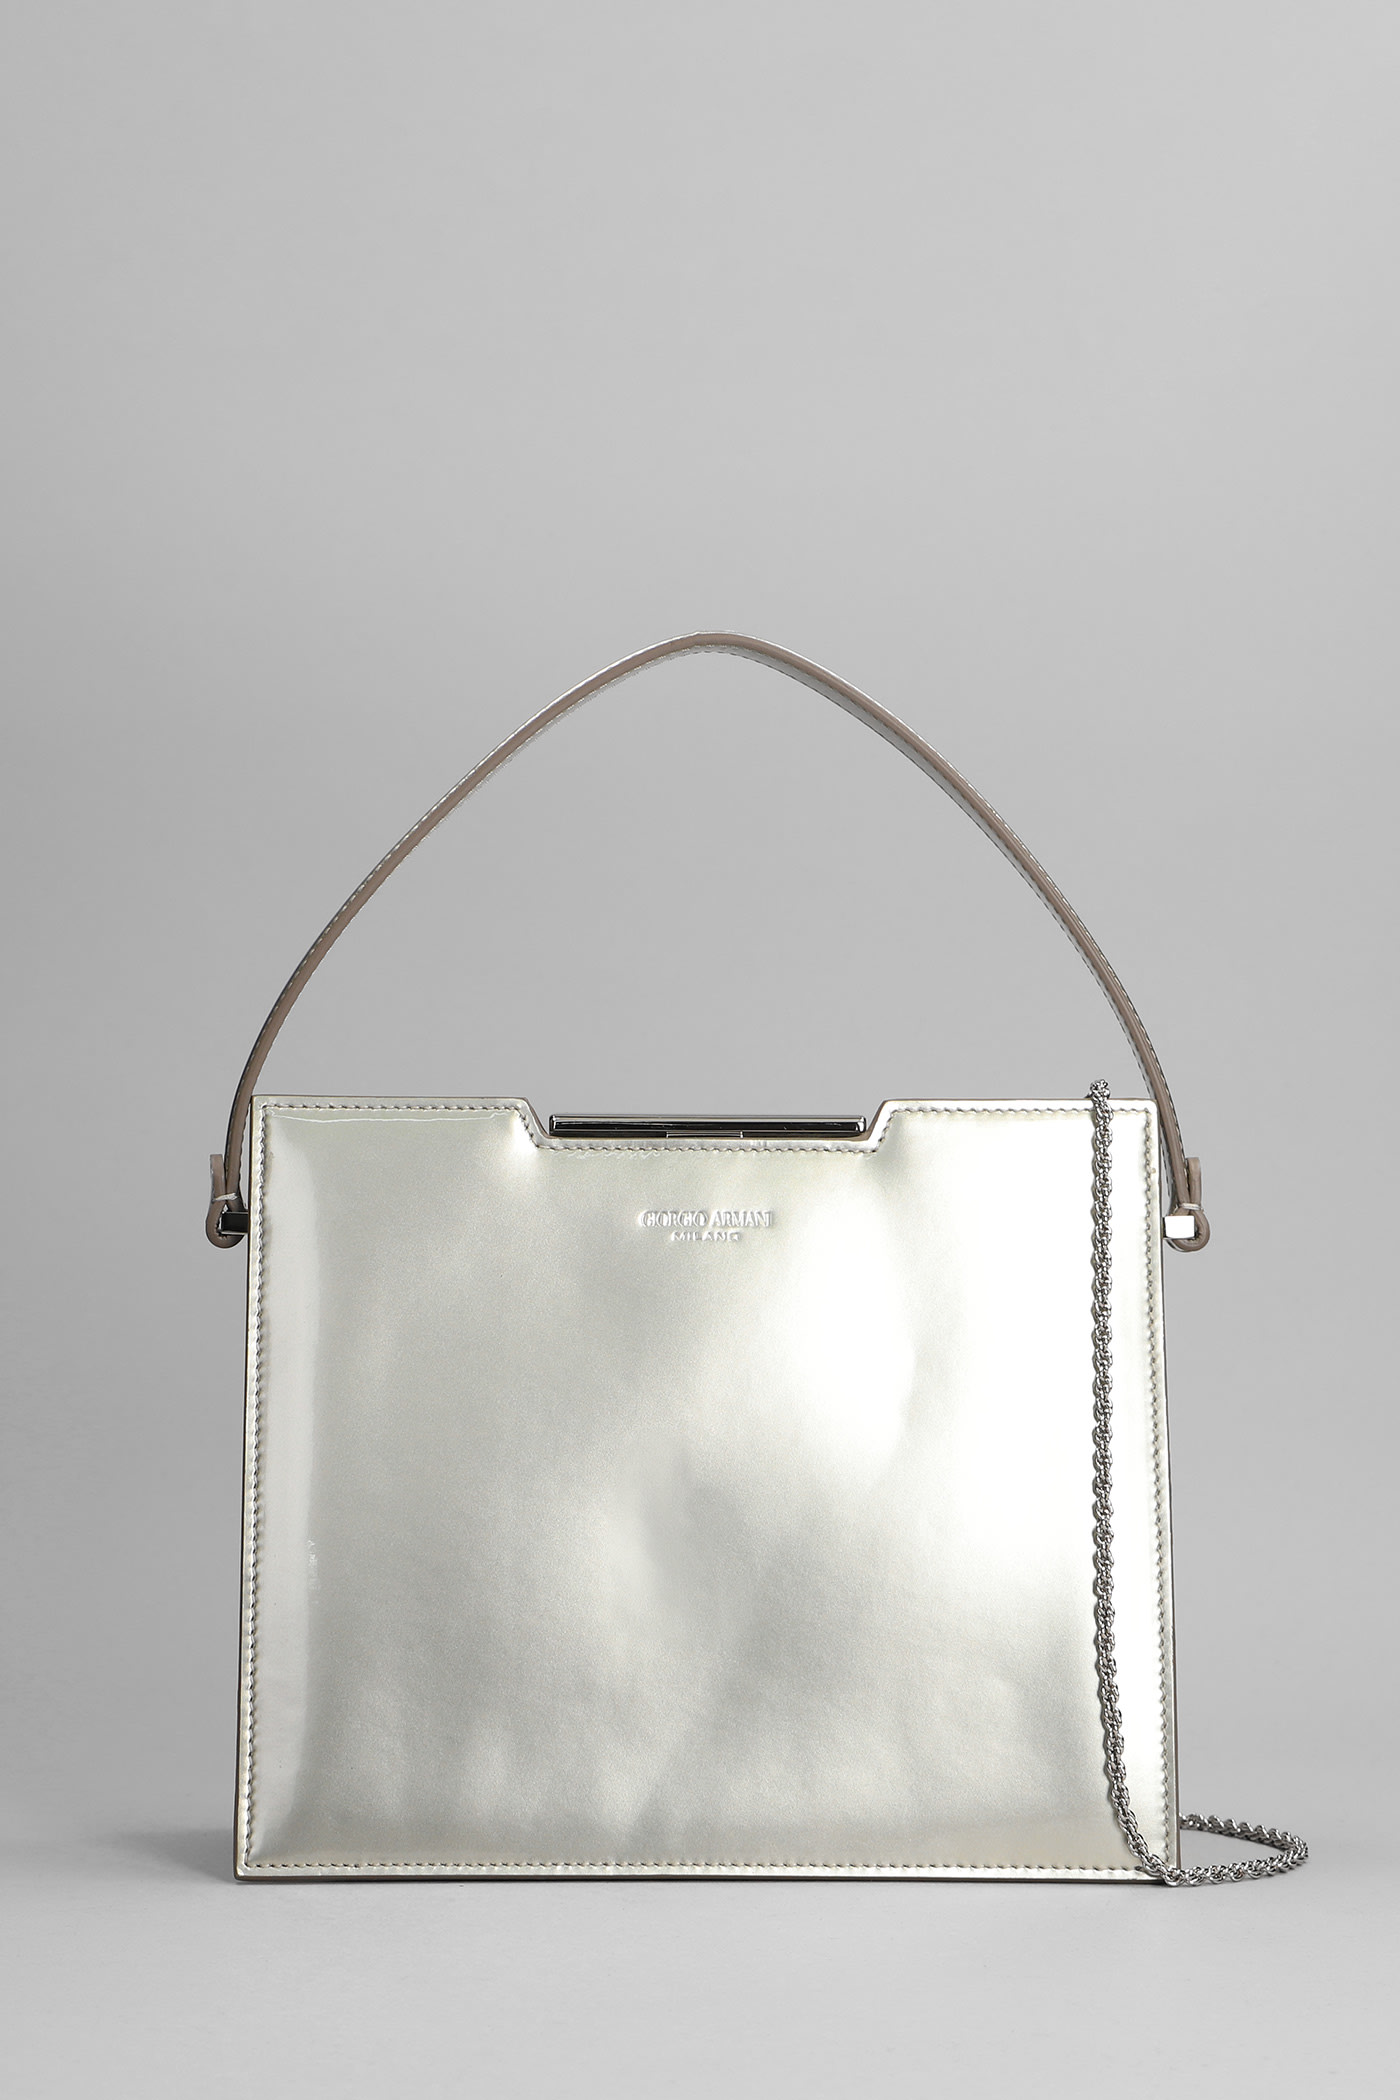 Giorgio Armani Hand Bag In Silver Leather